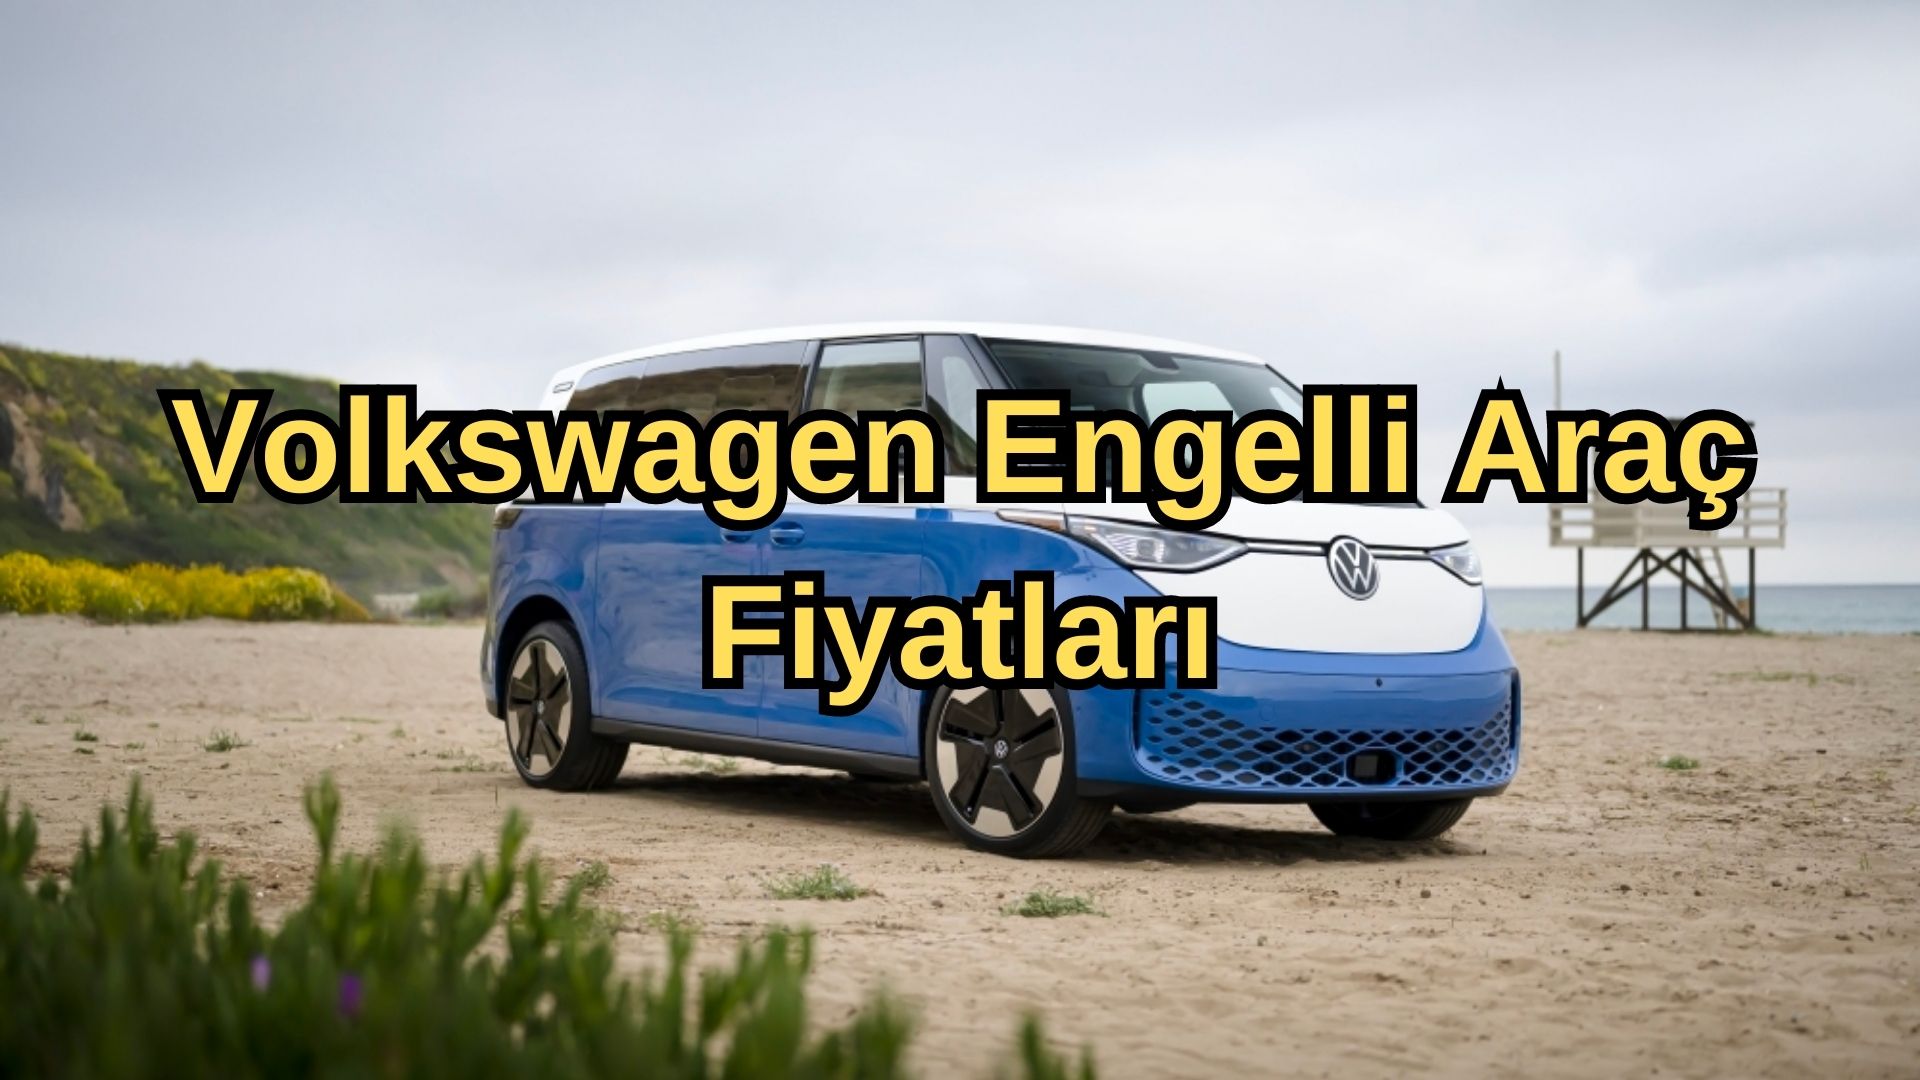 Volkswagen Engelli Araç Fiyatları